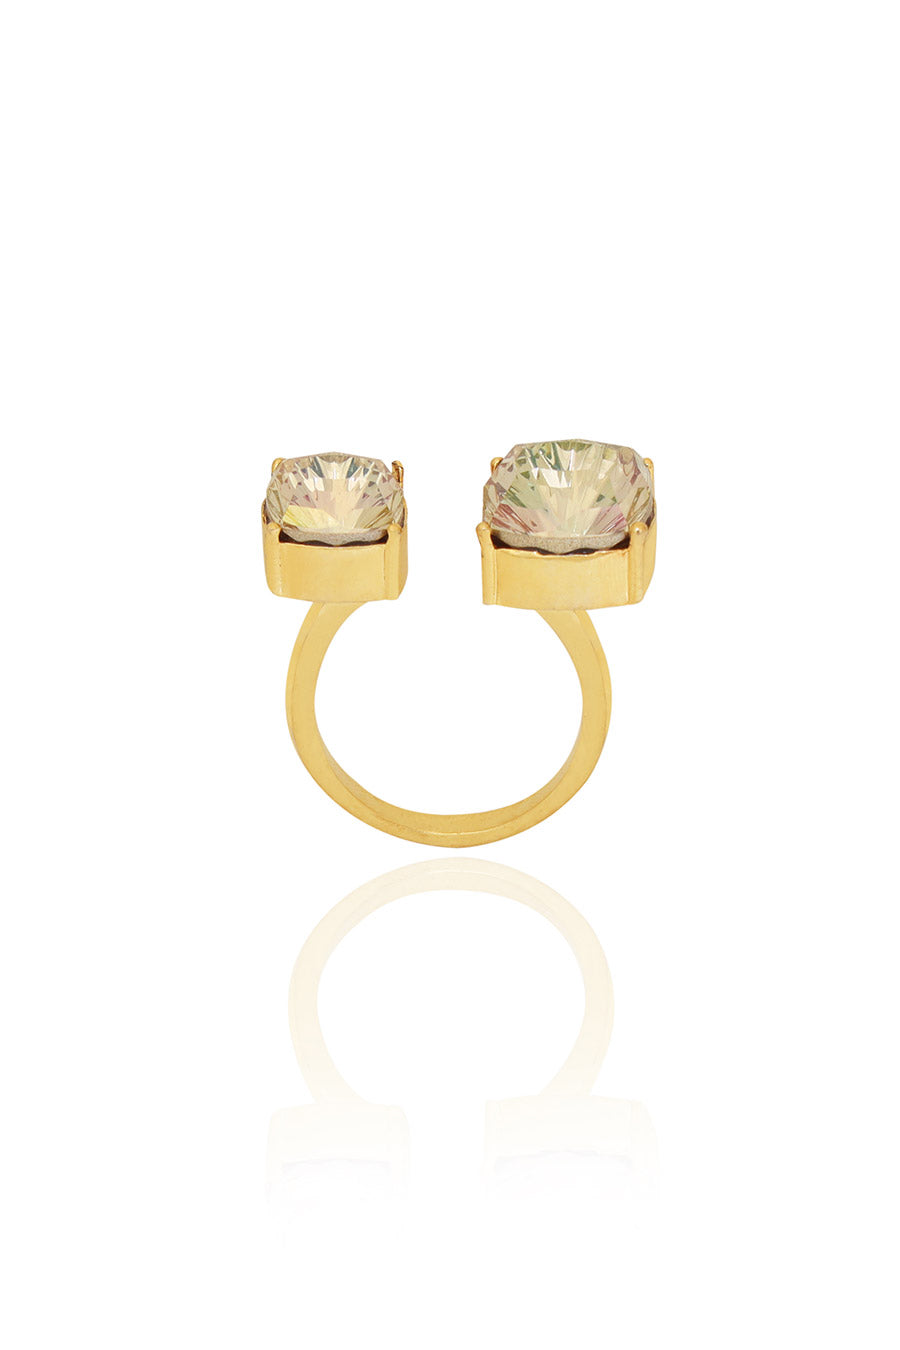 Luminous Gold Velvet Sage Swarovski Ring